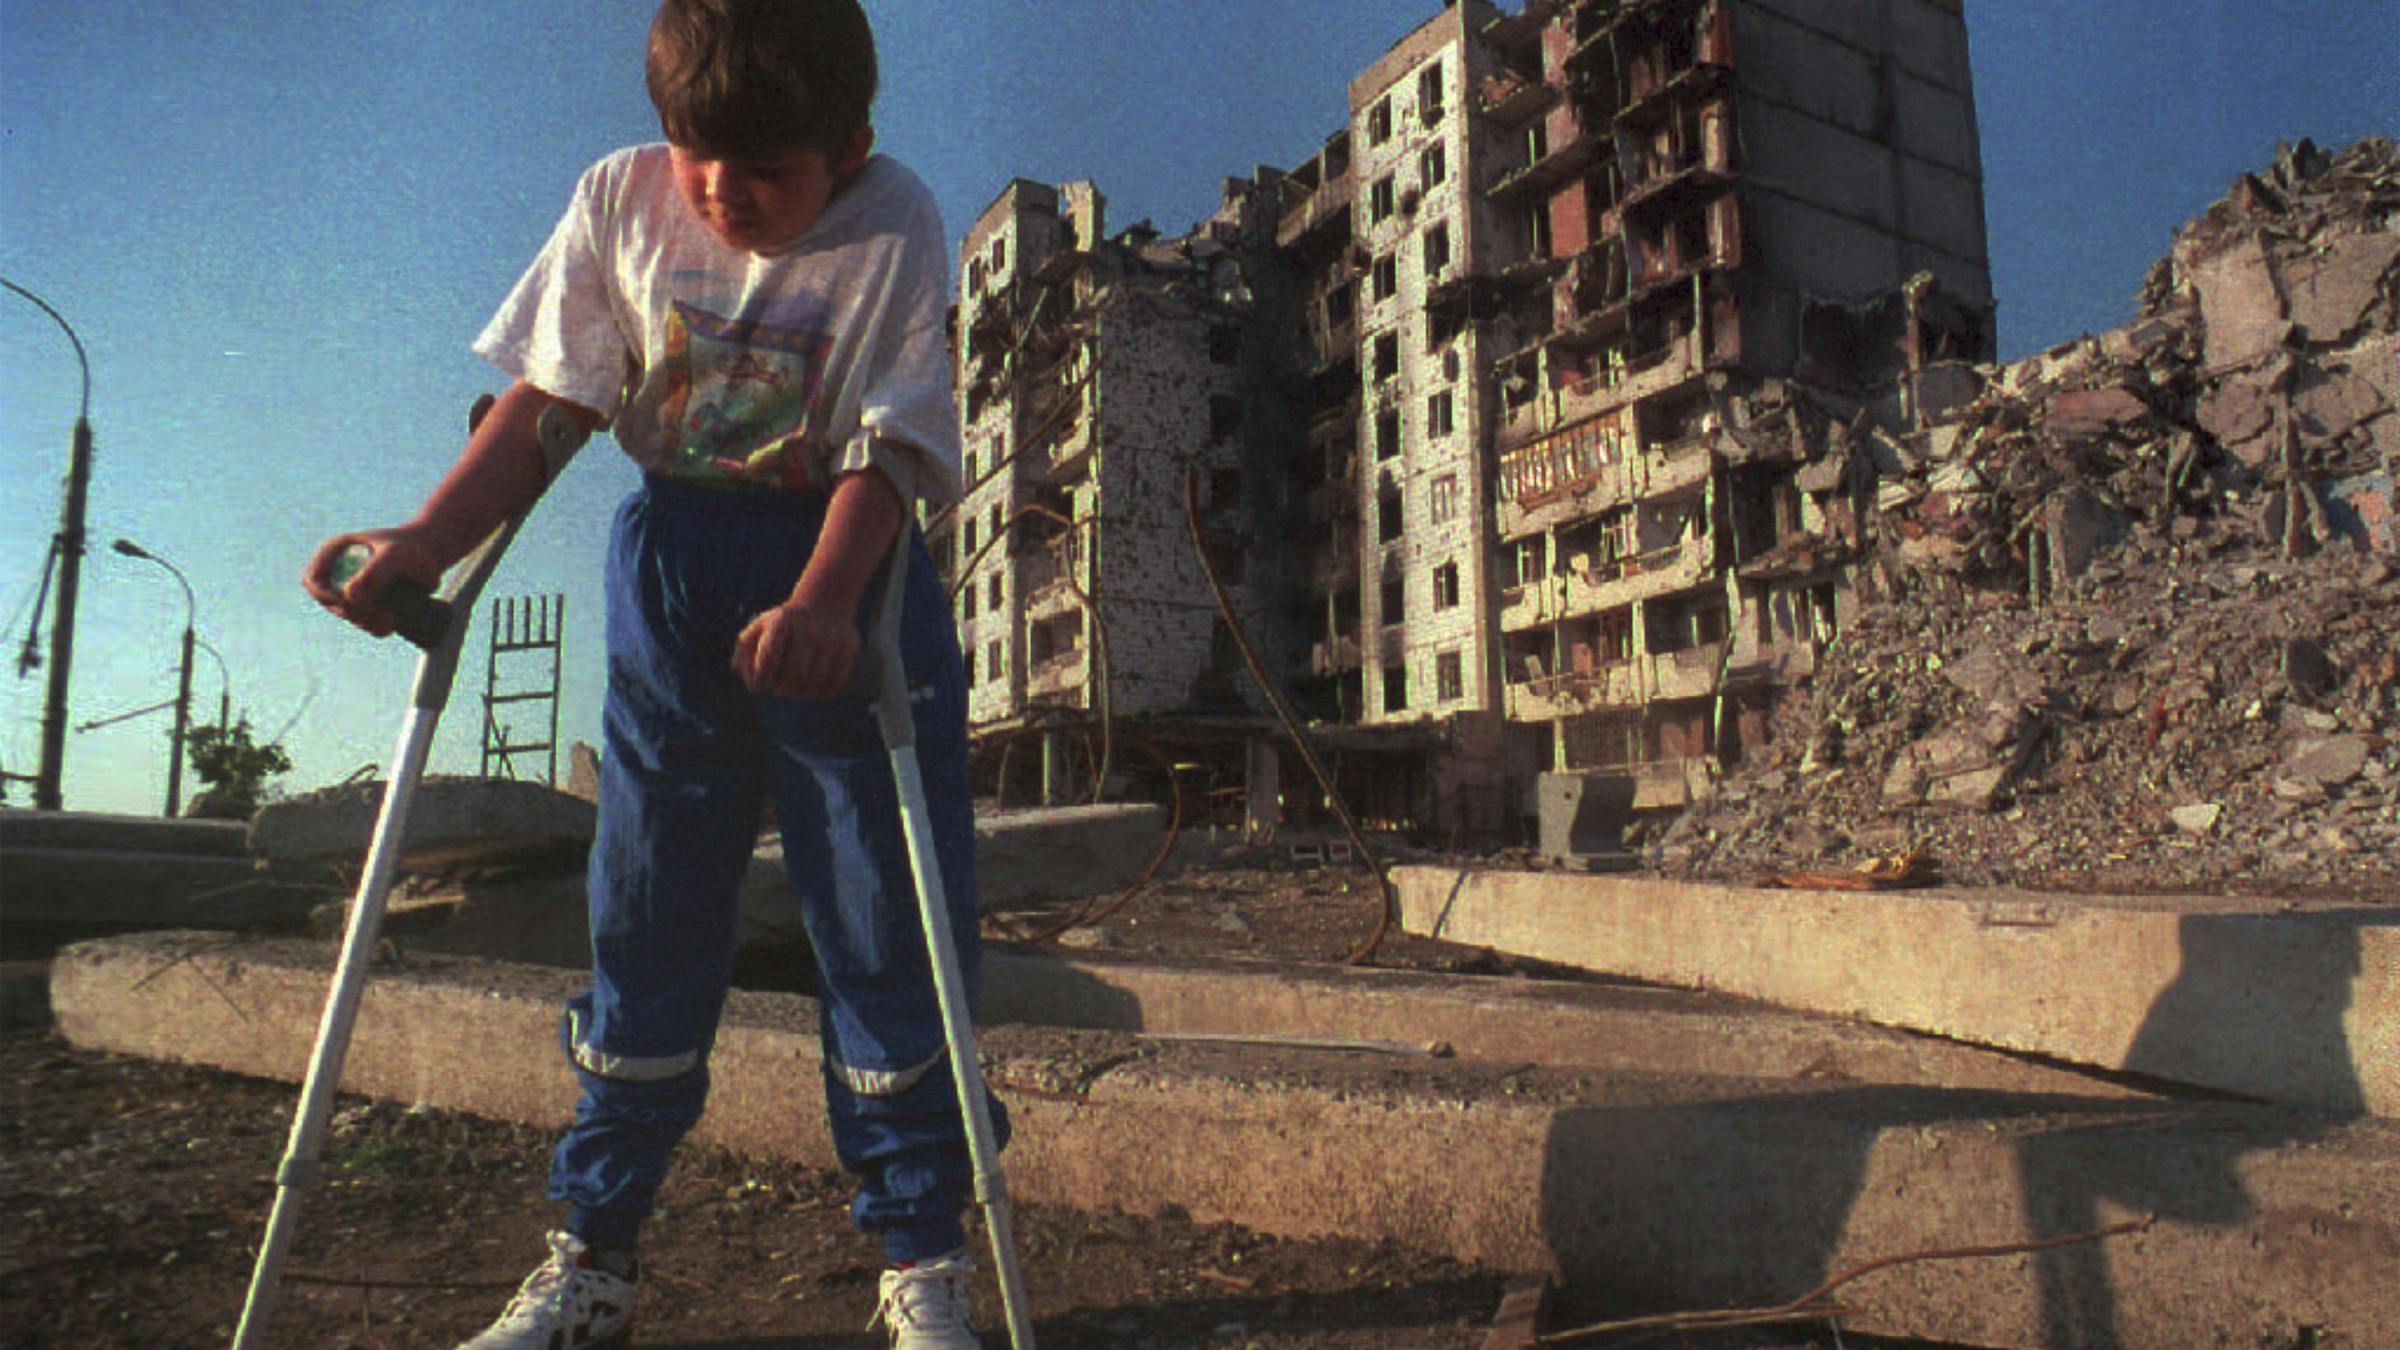 Ein Juge auf Krücken steht auf einer staubigen Straße, im Hintergrund ist ein zerbombtes Wohnhaus.